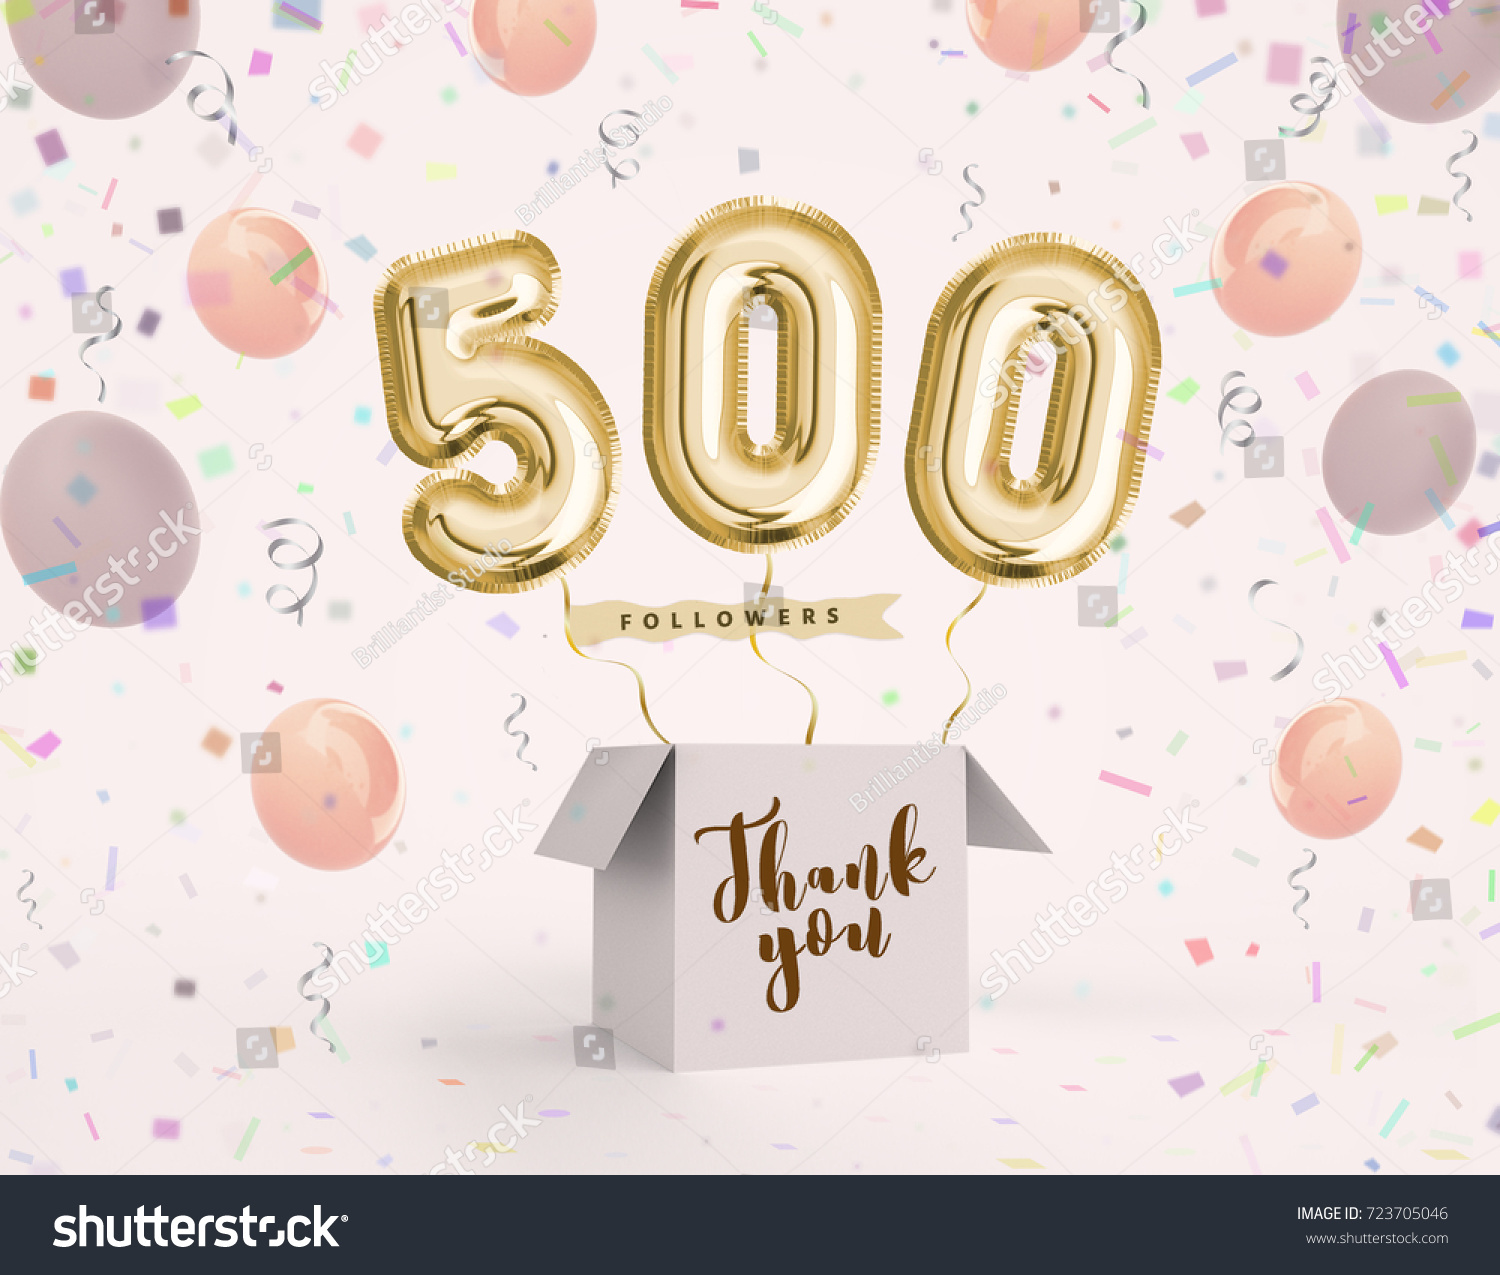 Thank you 500 followers Bilder, arkivbilder og vektorer Shutterstock.